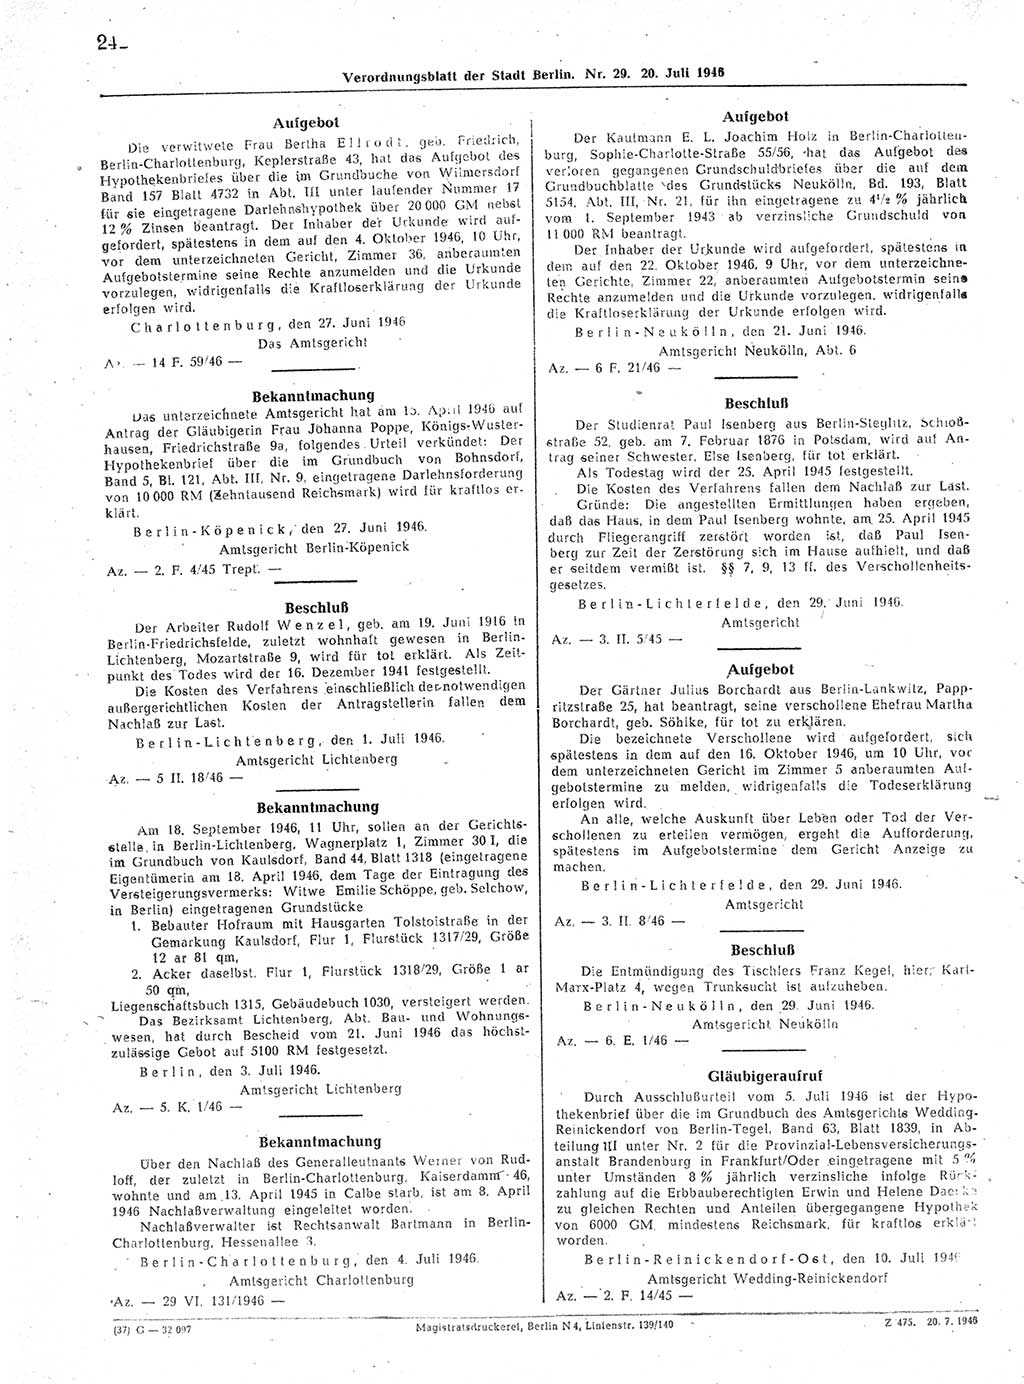 Verordnungsblatt (VOBl.) der Stadt Berlin, für Groß-Berlin 1946, Seite 242 (VOBl. Bln. 1946, S. 242)